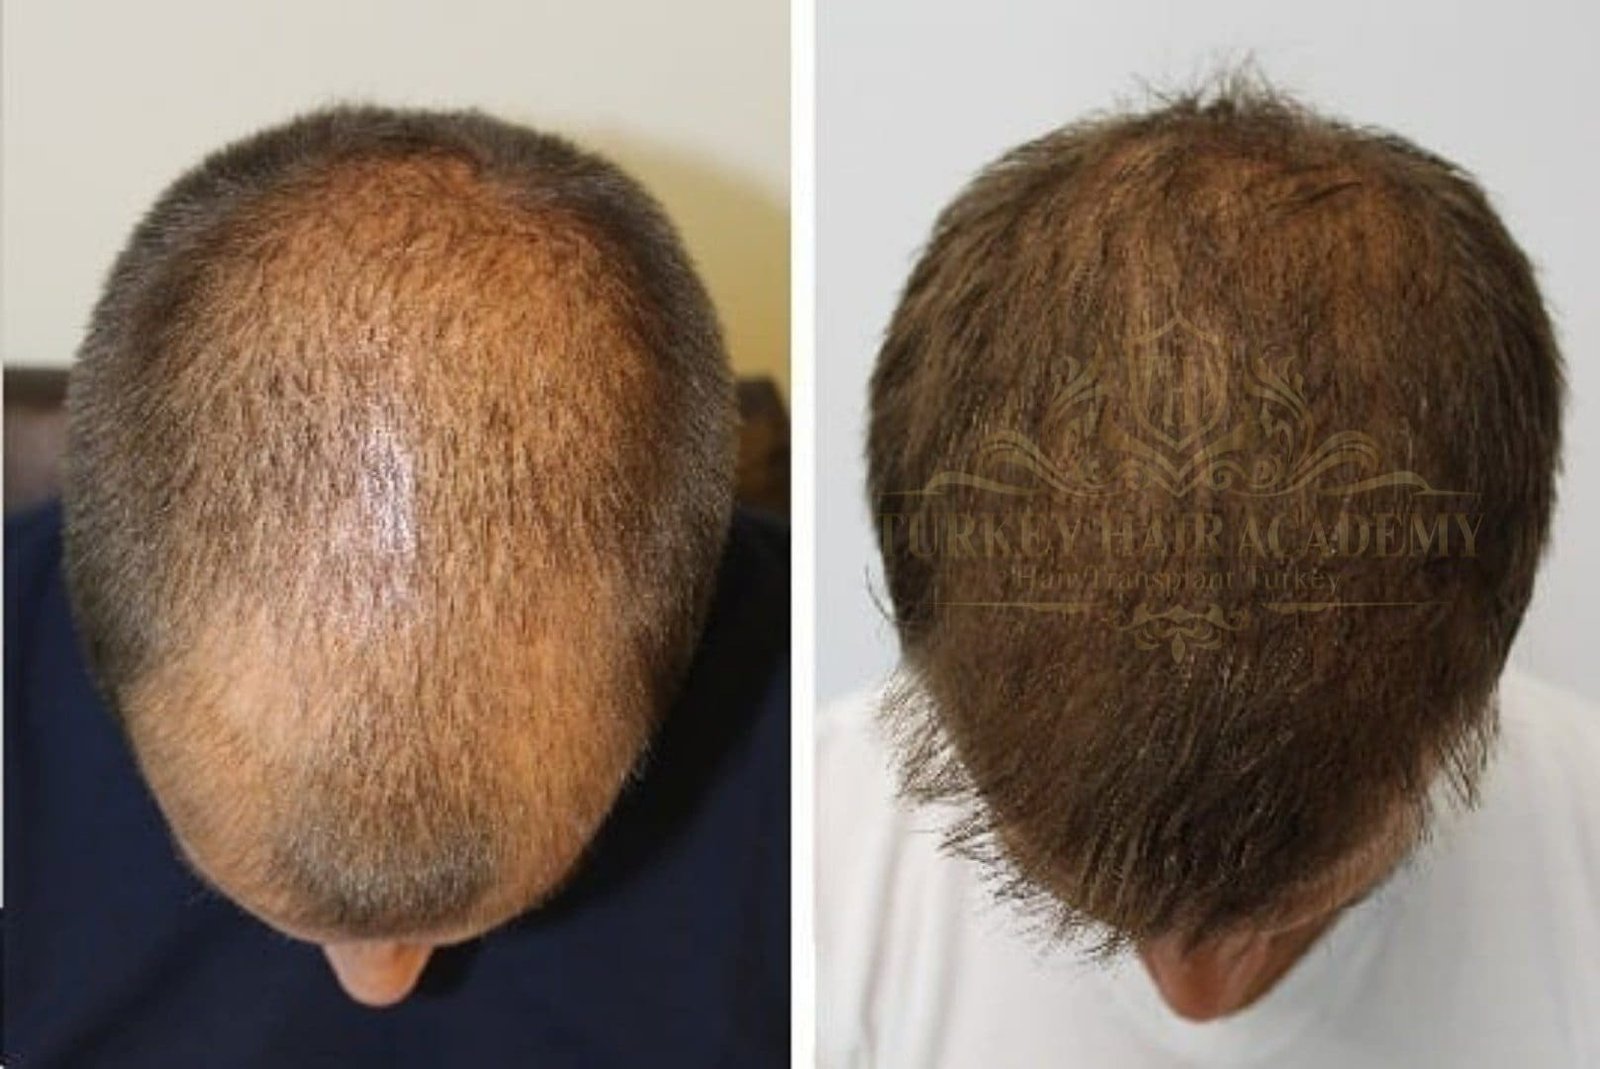 Руслан белый после пересадки волос фото до и после